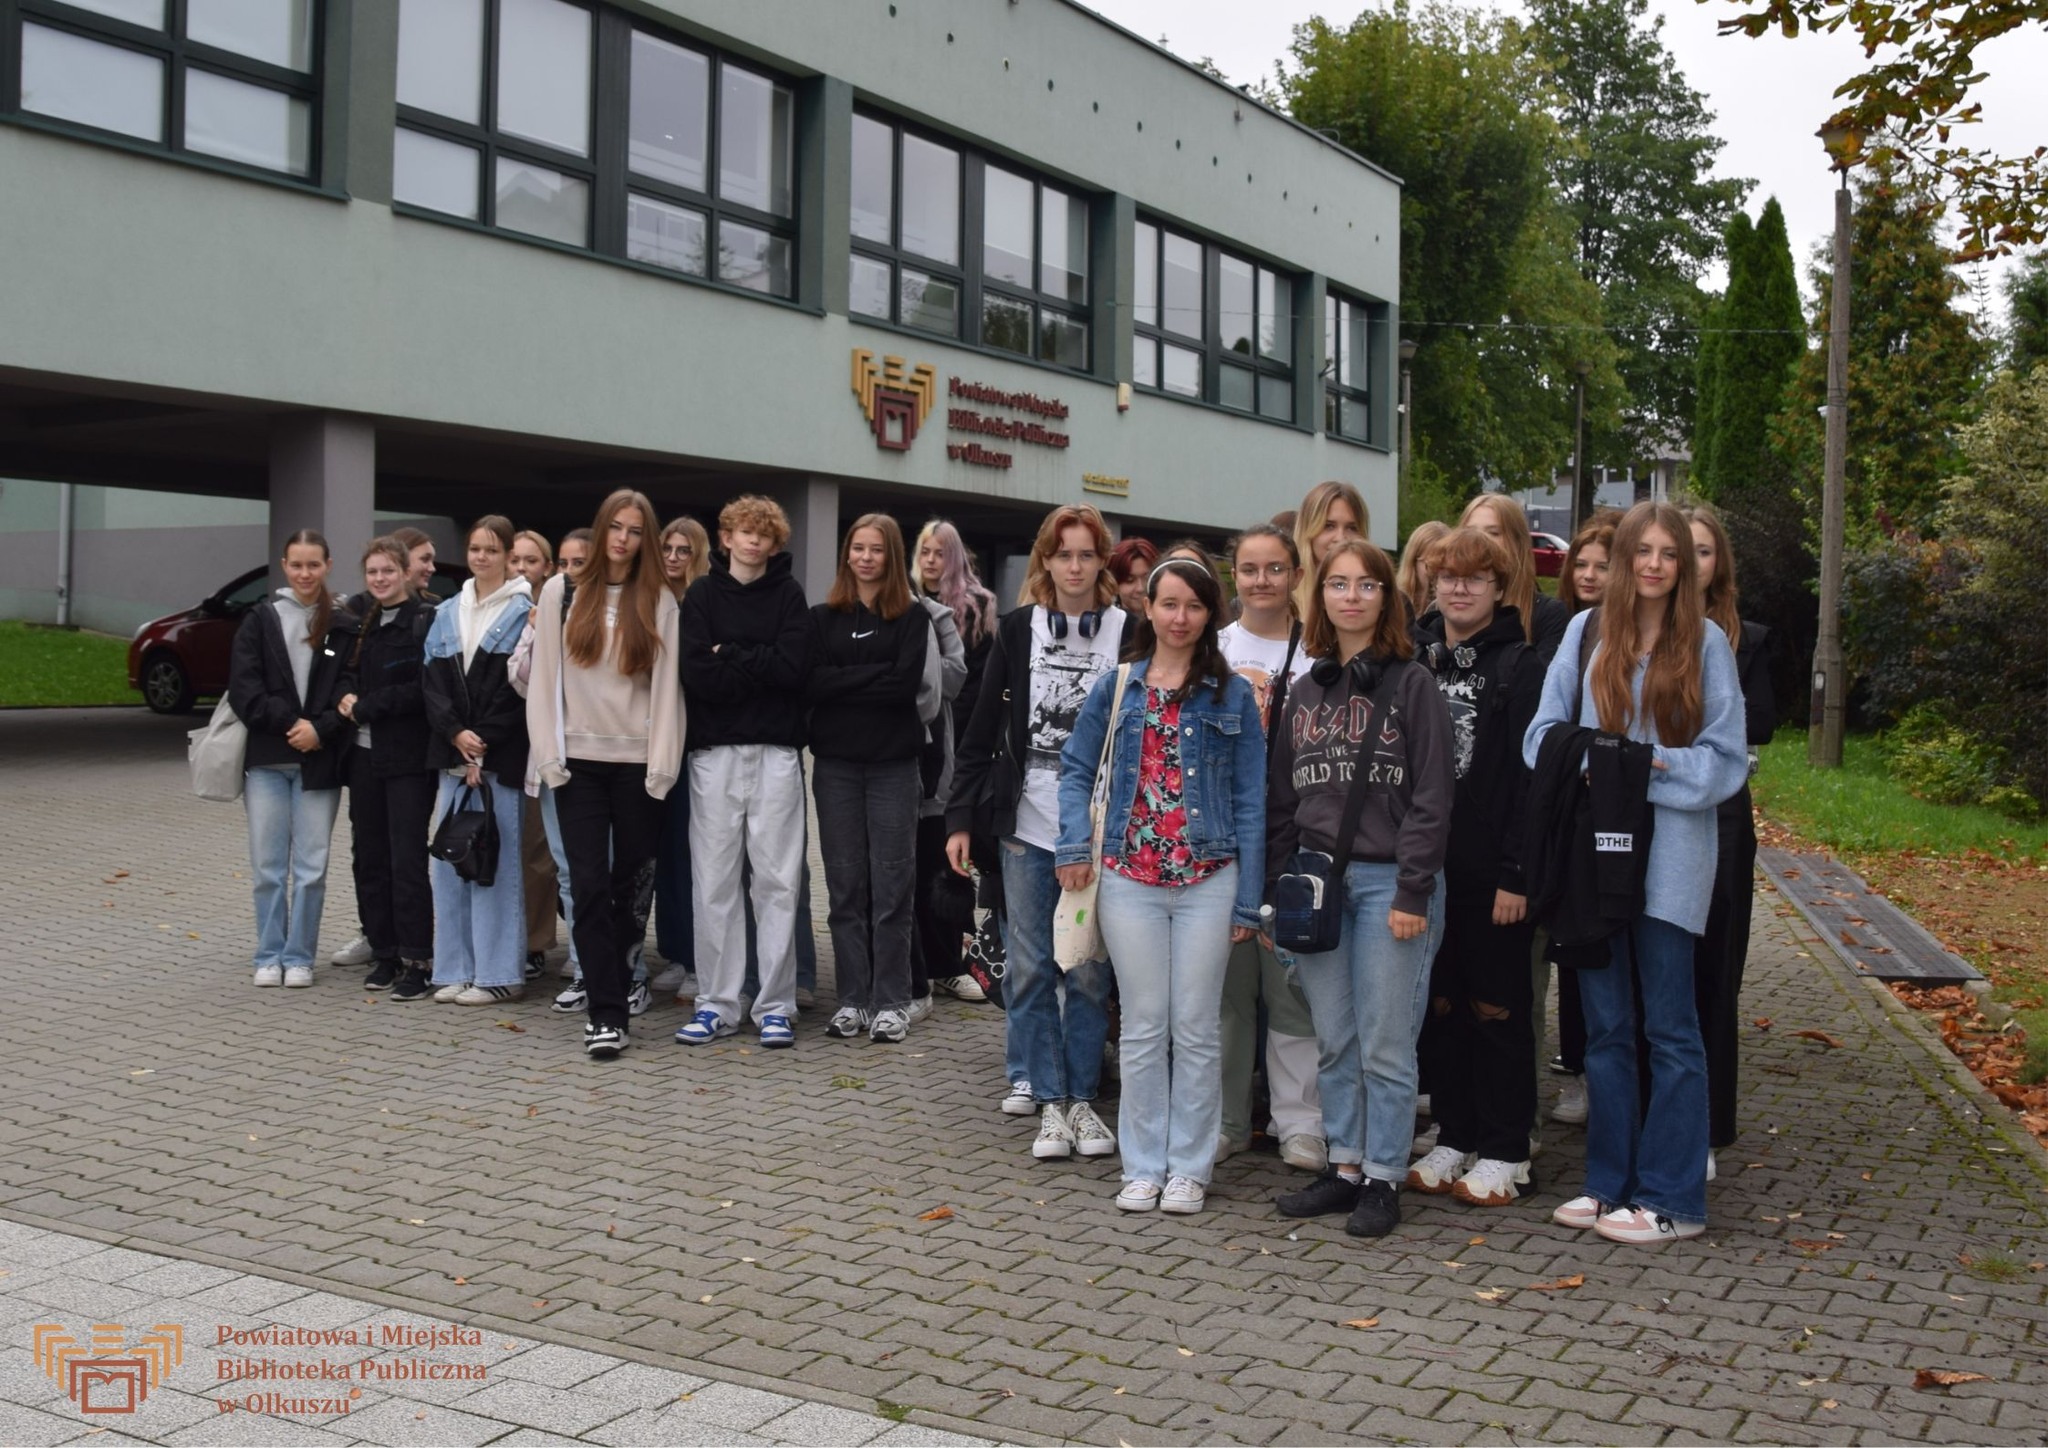 Zdjęcie zostało zrobione przed budynkiem olkuskiej Biblioteki. Przedstawia dużą grupę młodzieży, pozującą do wspólnego zdjęcia.